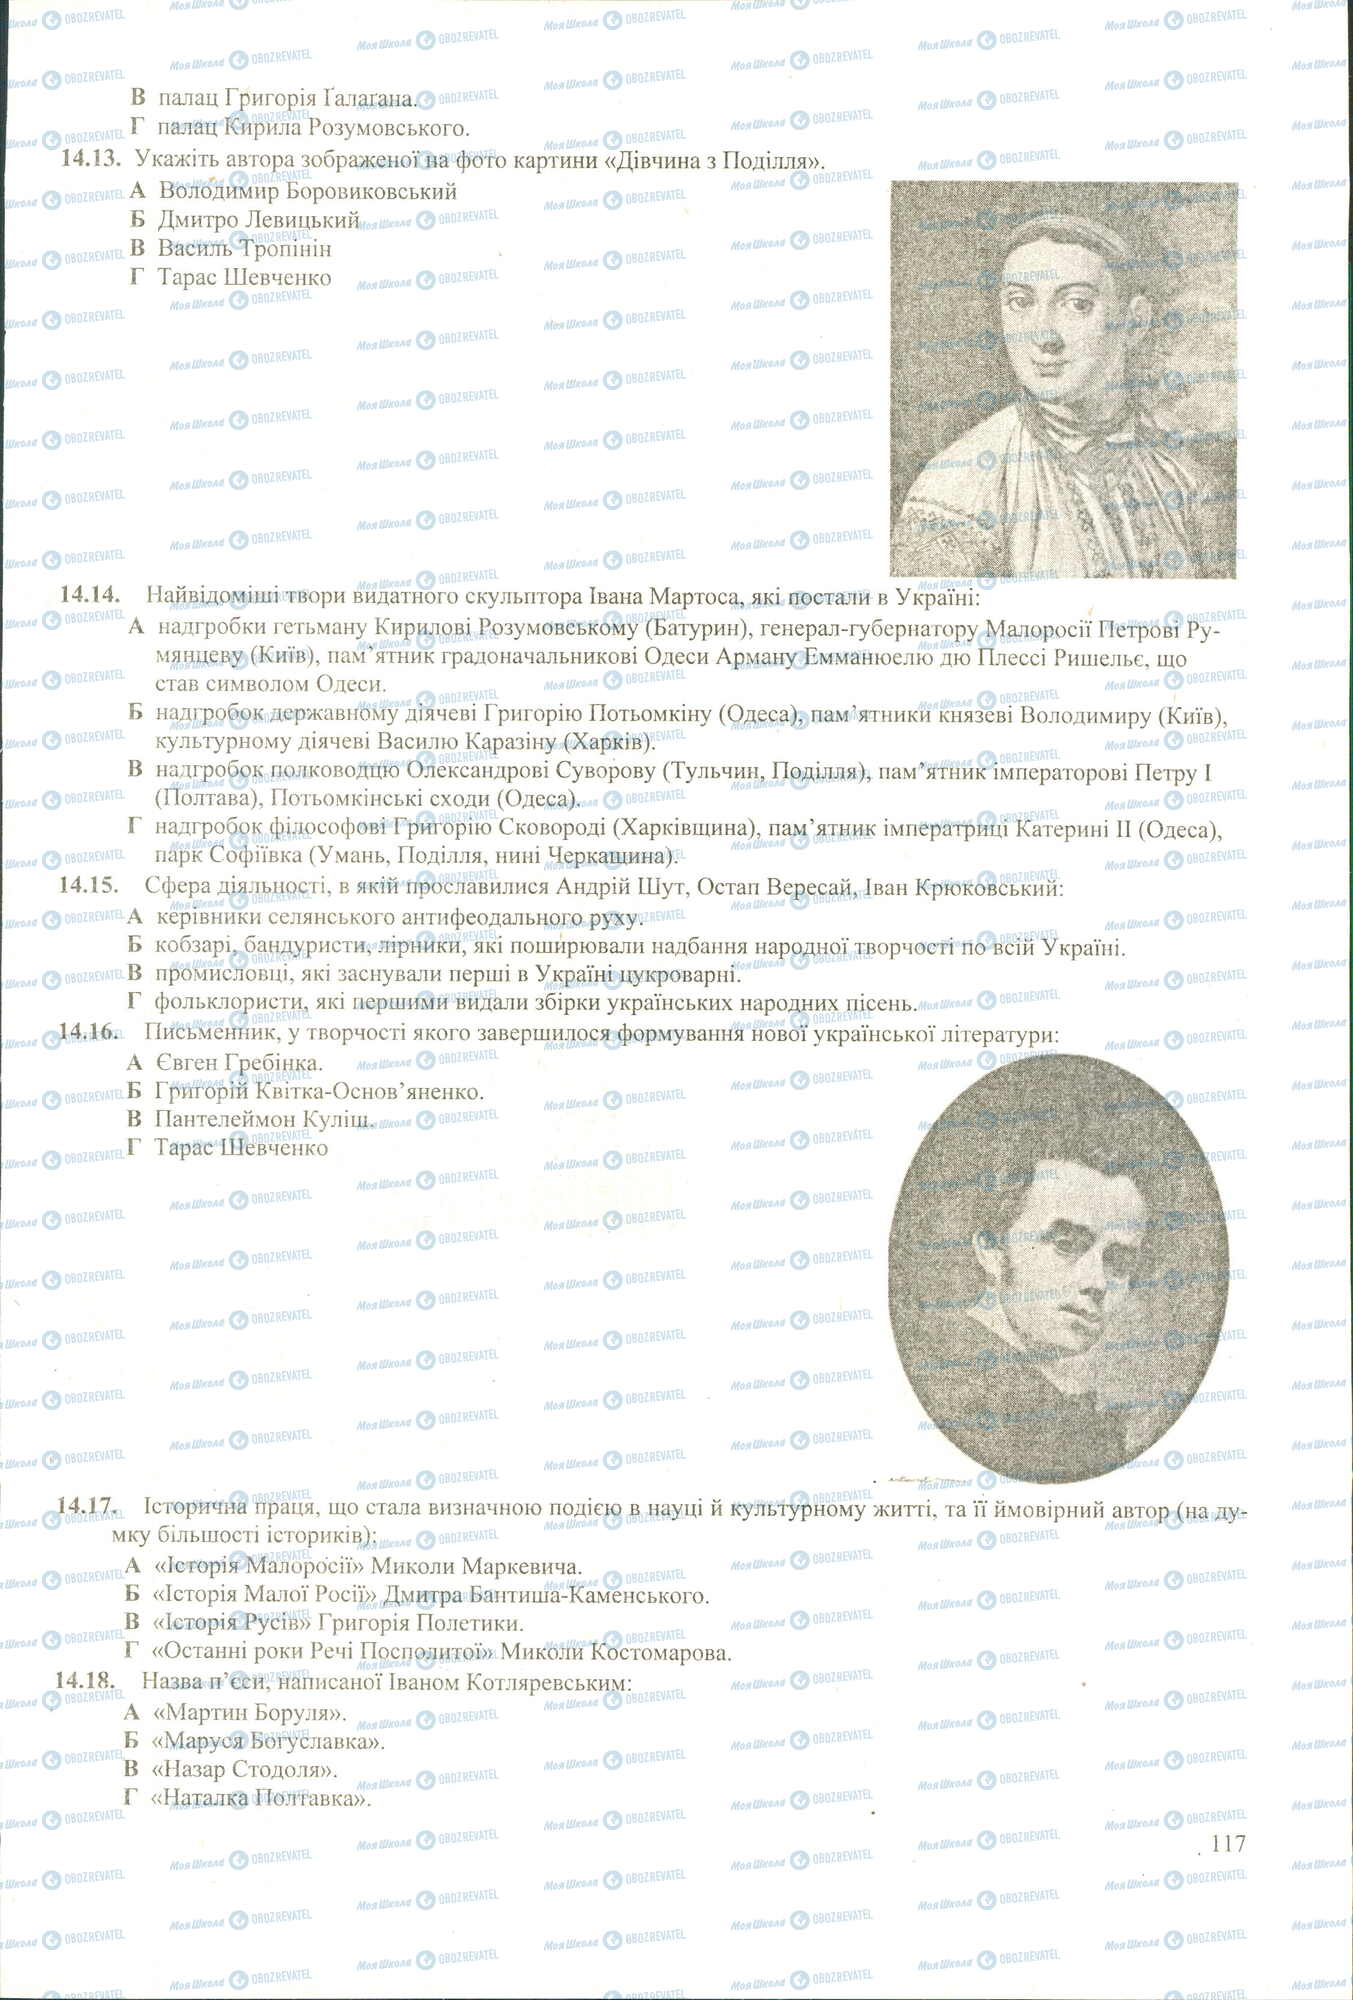 ЗНО История Украины 11 класс страница 13-18